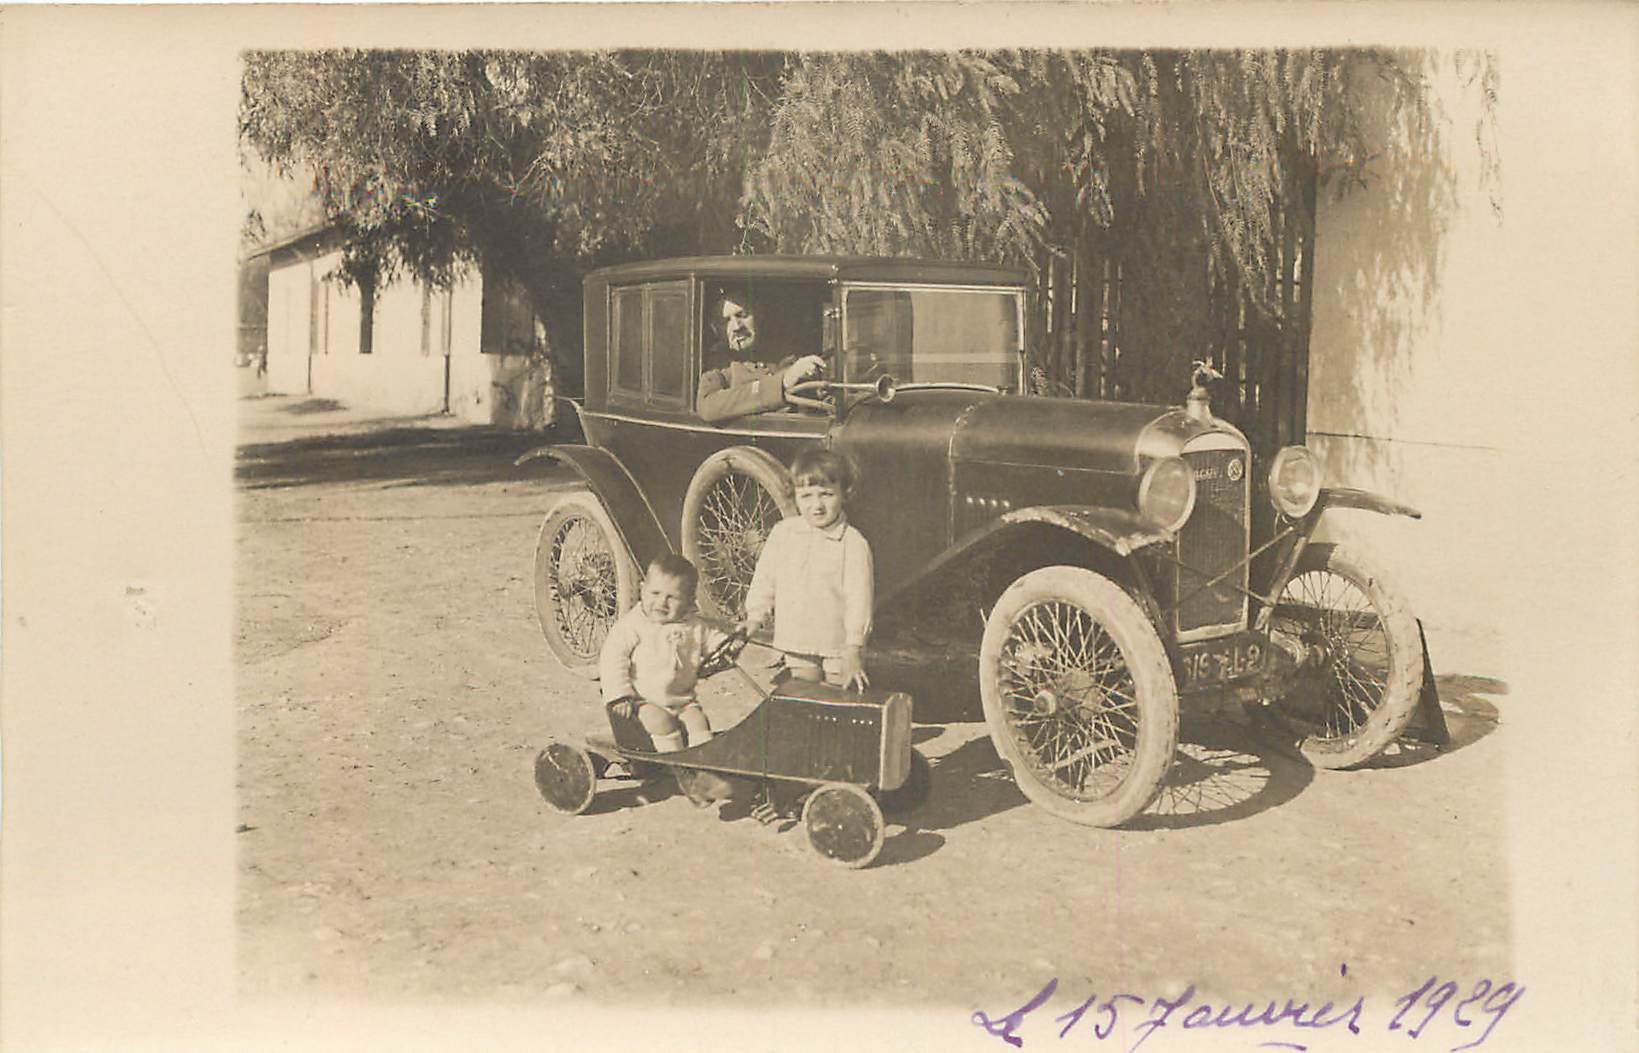 Photo Cpa d'une automobile " AMILCAR " et d'une voiturette jouet 1929